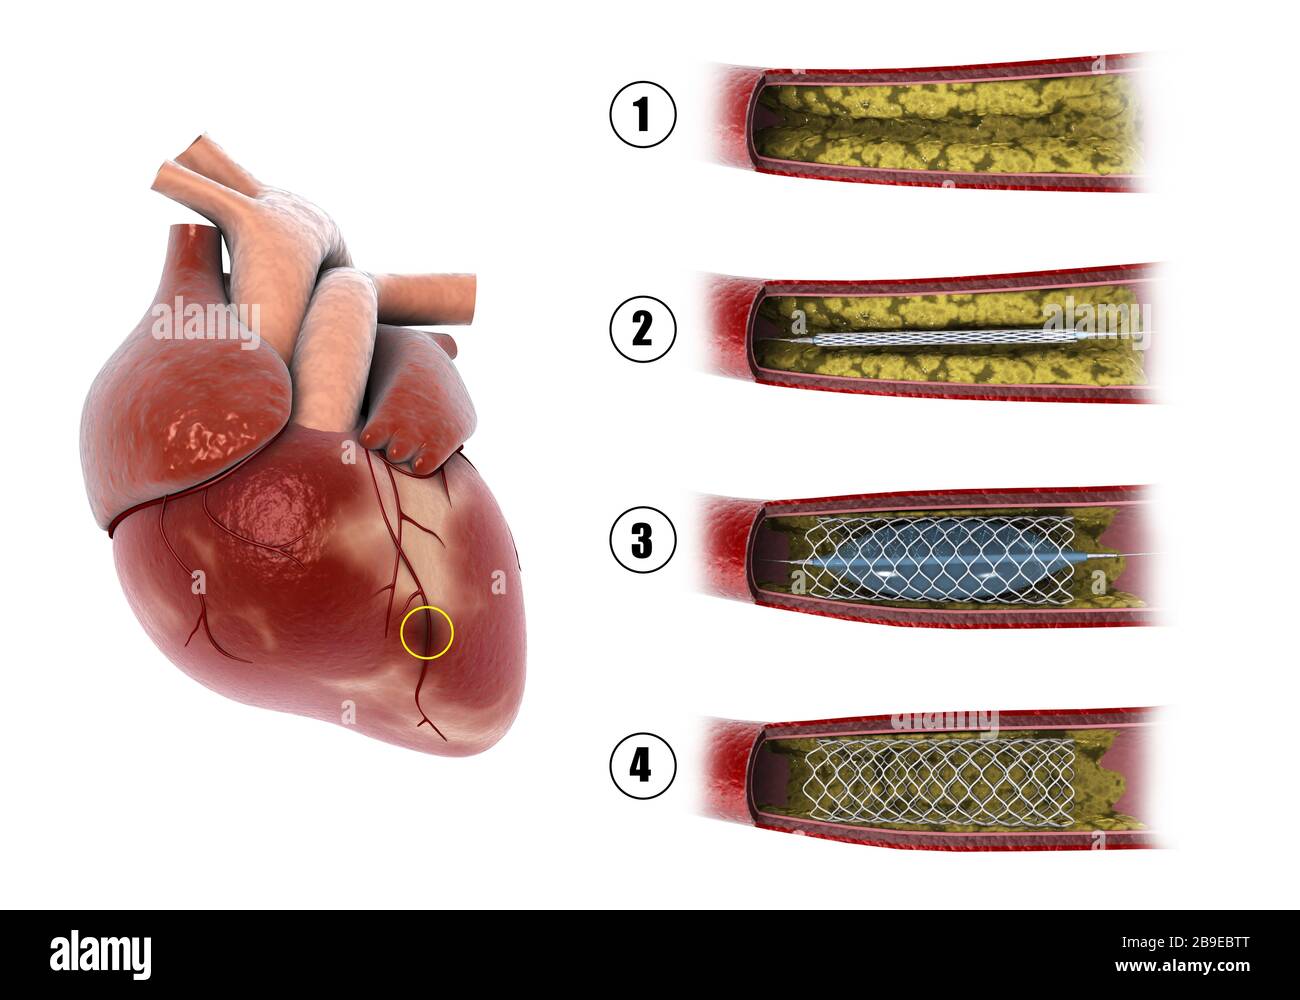 Diagramme montrant la procédure d'angioplastie du ballonnet pour élargir les artères obstruées dans le cœur. Banque D'Images